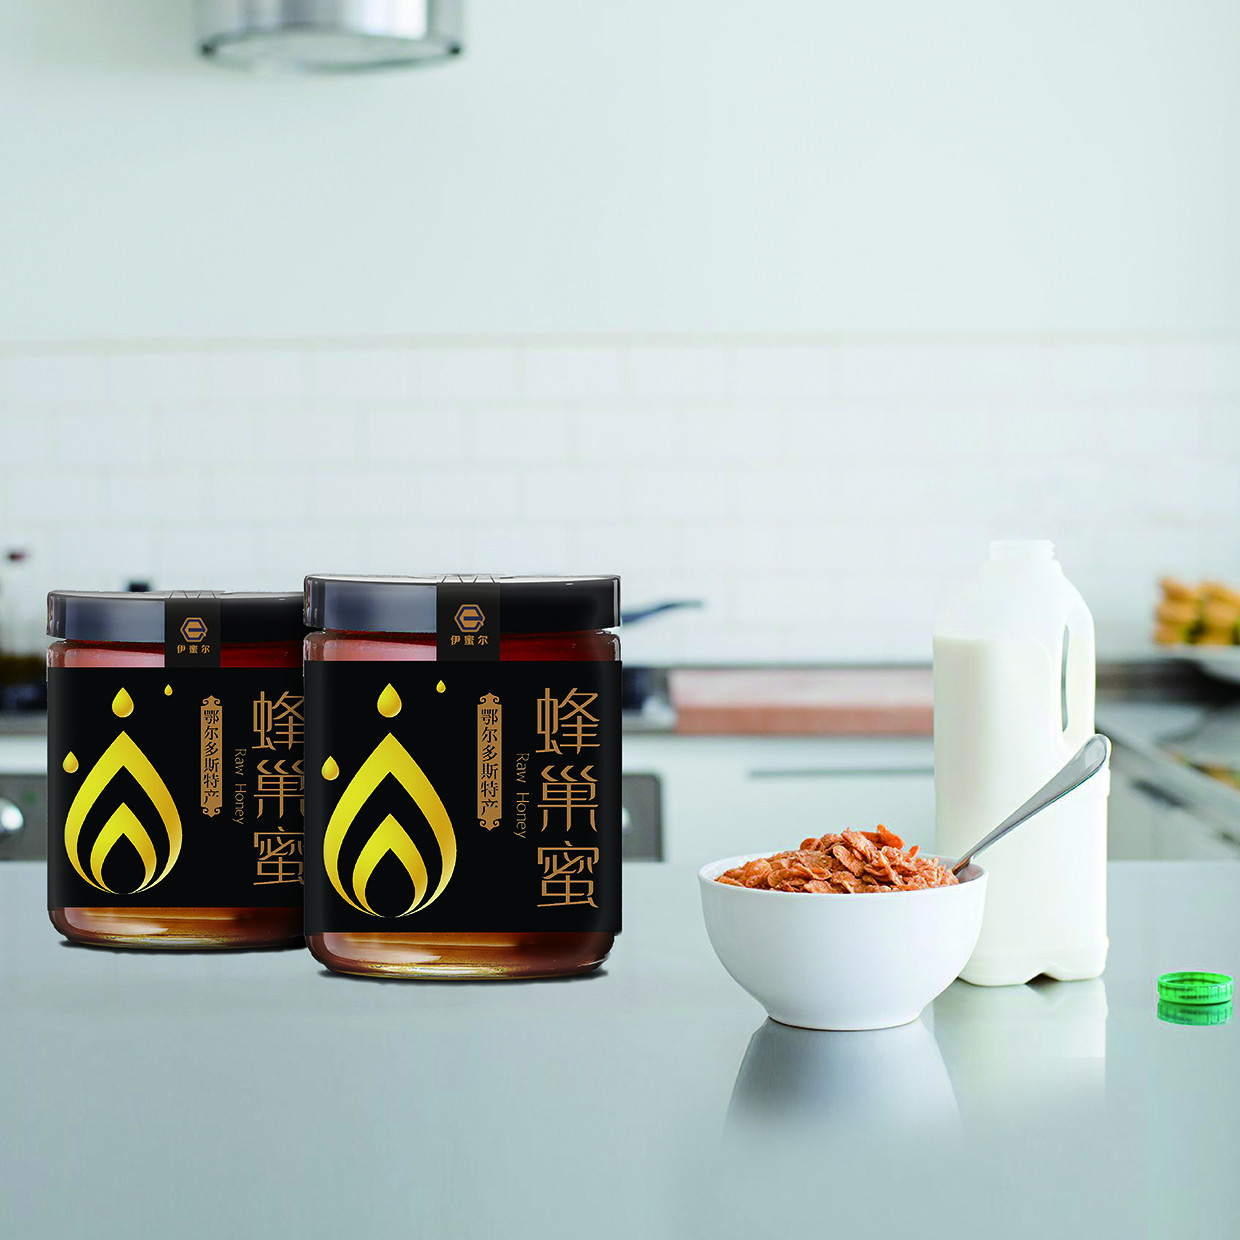 内蒙古蜂产品-内蒙古蜂蜜水-内蒙古蜂蜜-金鹭伊蜜尔蜂产品公司